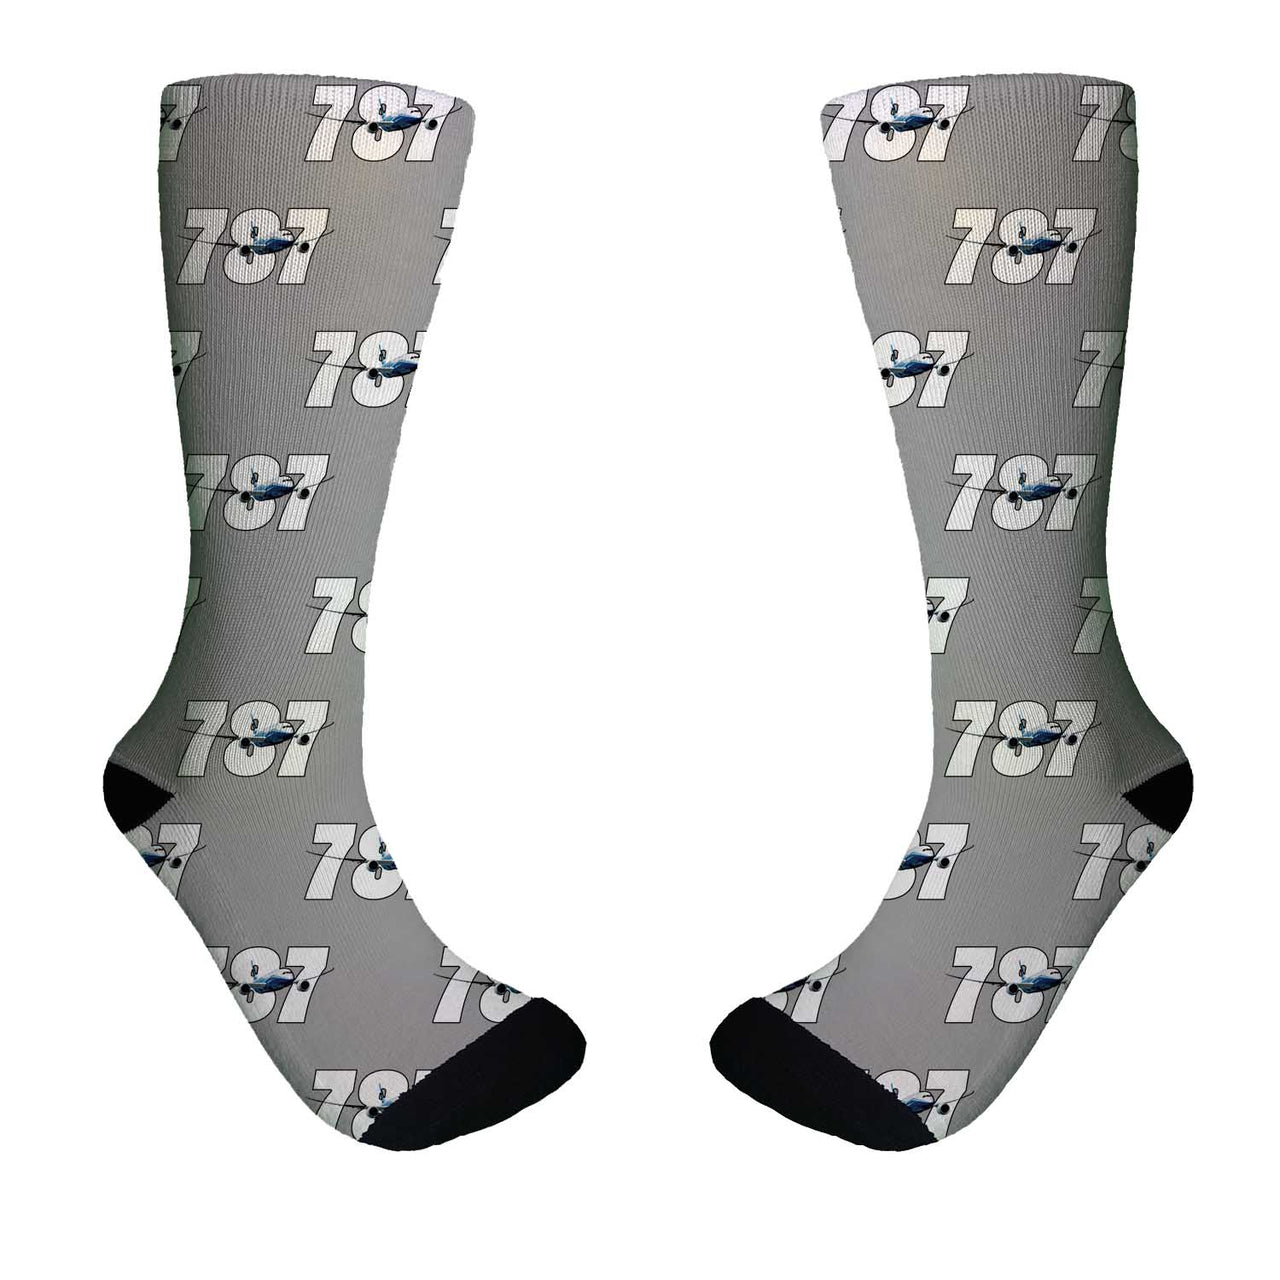 Super Boeing 787 Designed Socks